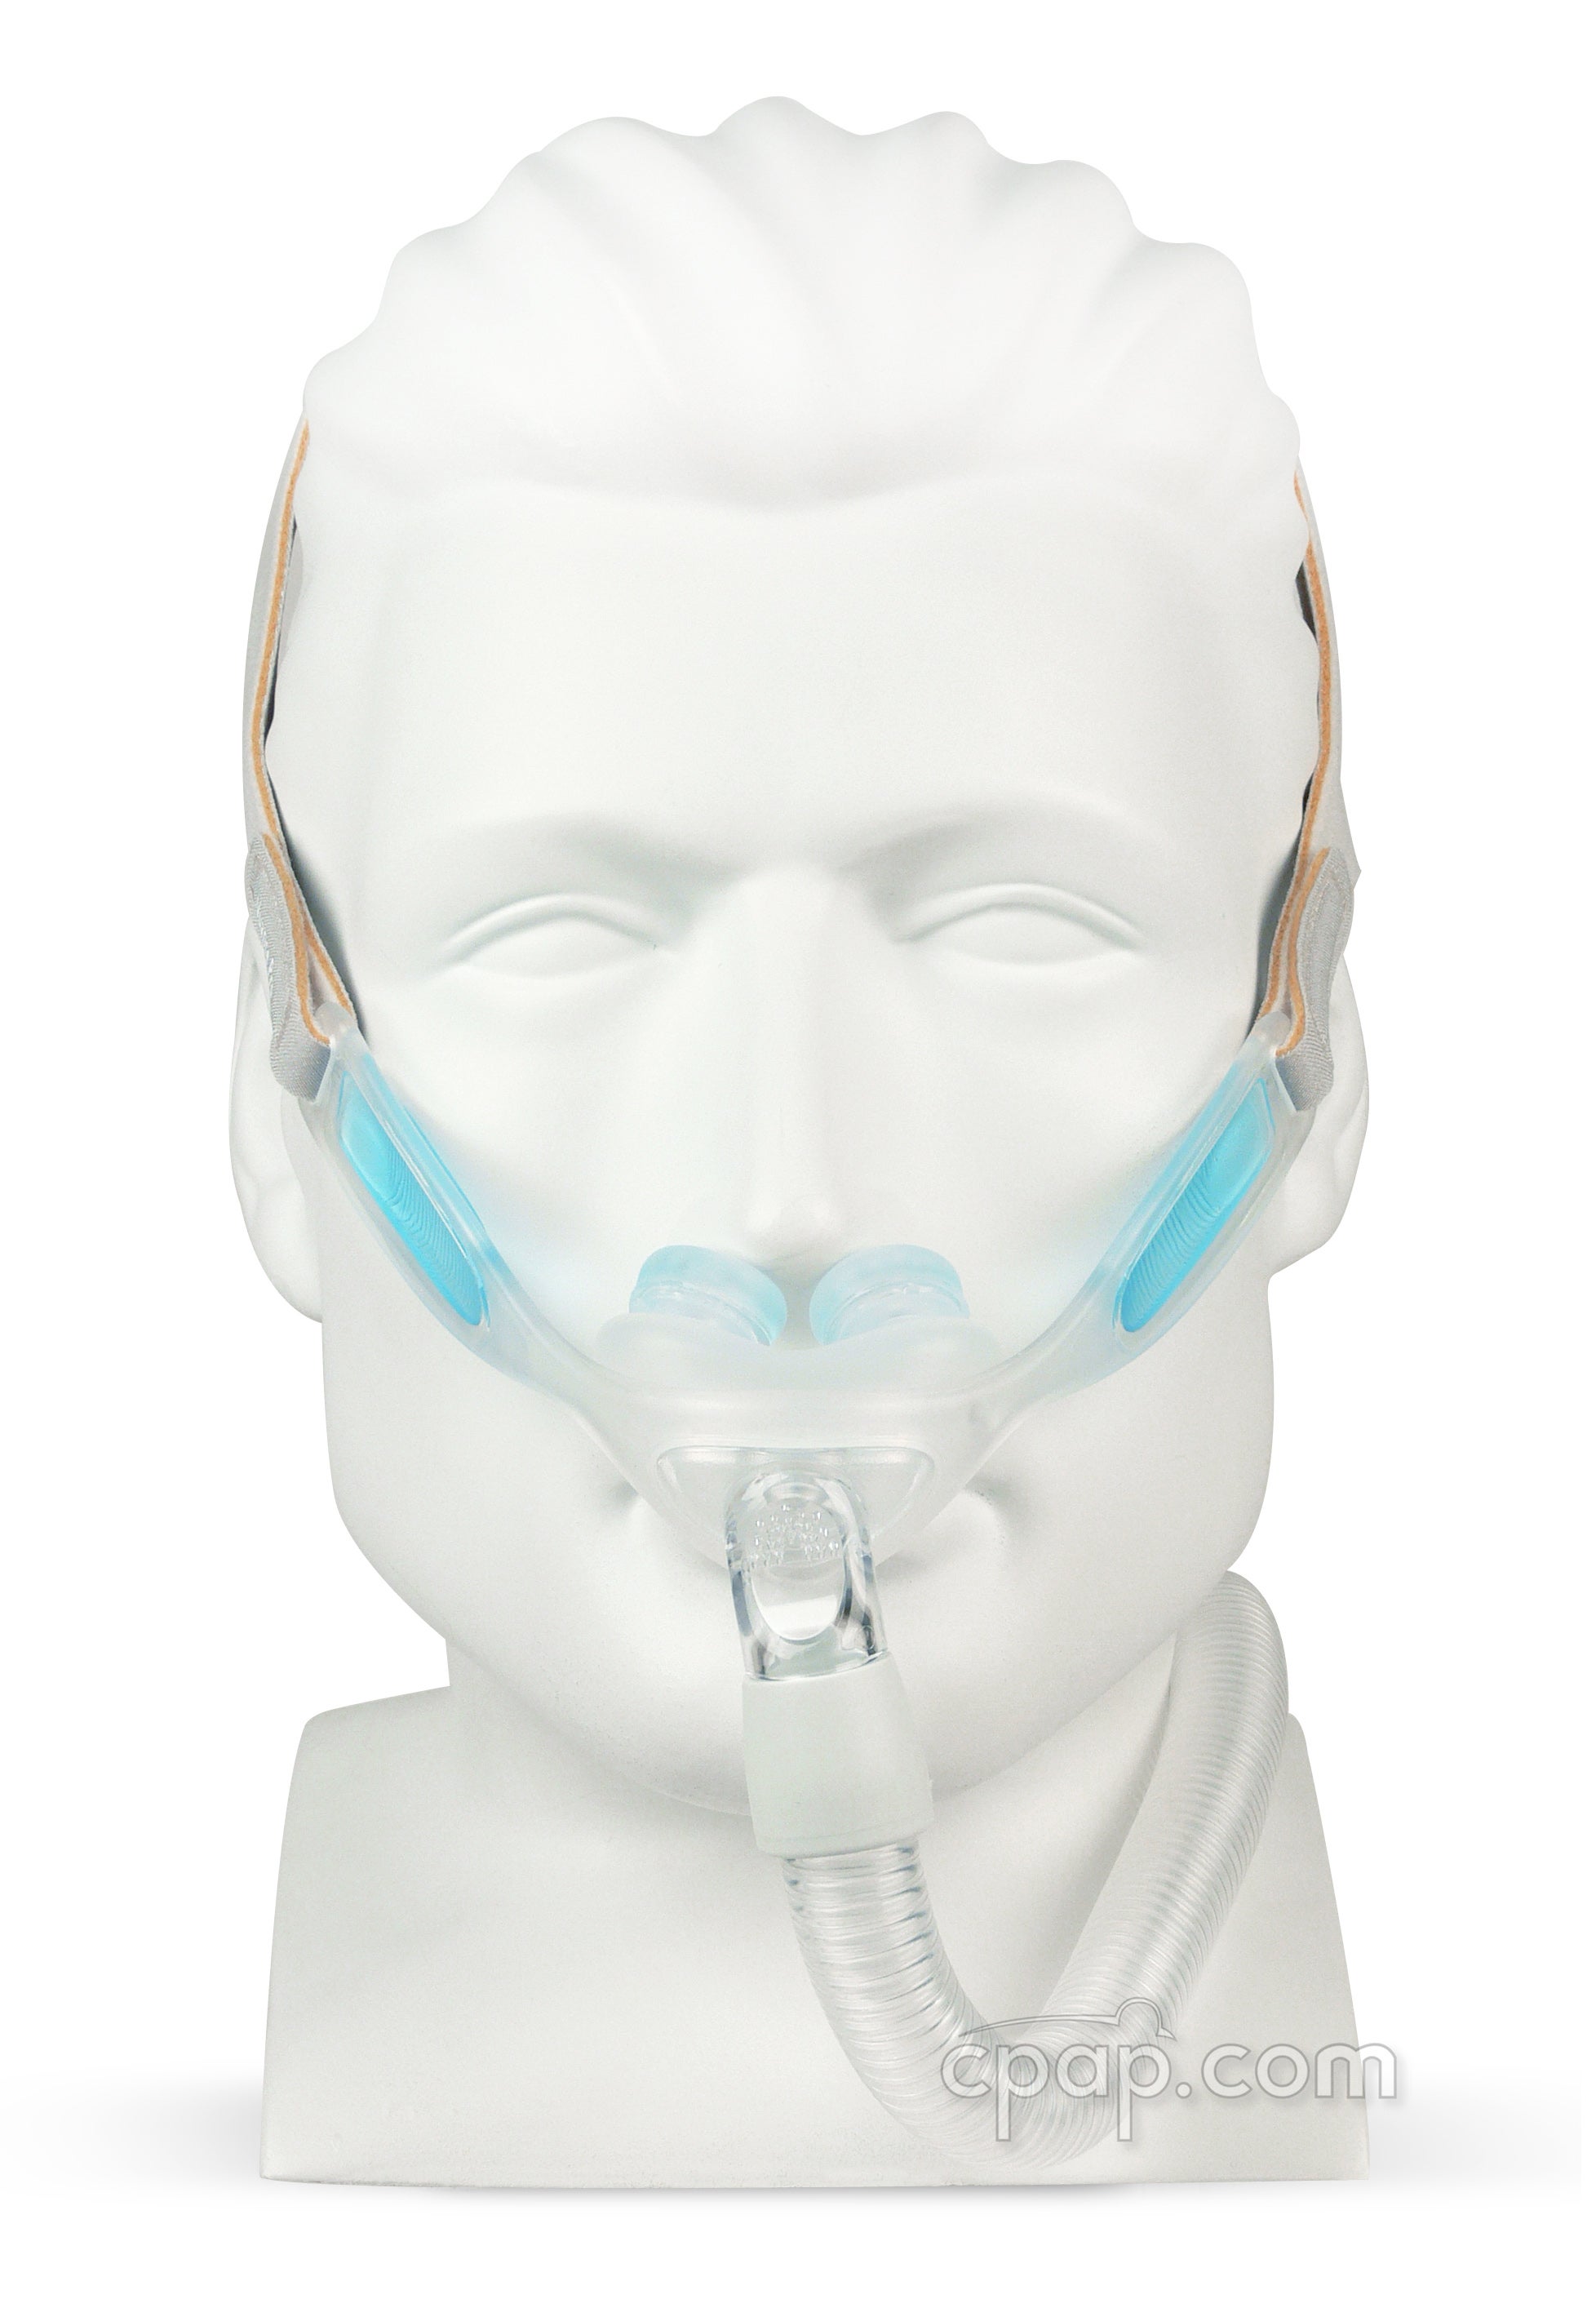 Uddrag Frastøde Lavet en kontrakt Philips Respironics Nuance & Nuance Pro Nasal Pillow CPAP Mask with Gel Nasal  Pillows | Nuance Pro CPAP Mask For Sale | CPAP.com